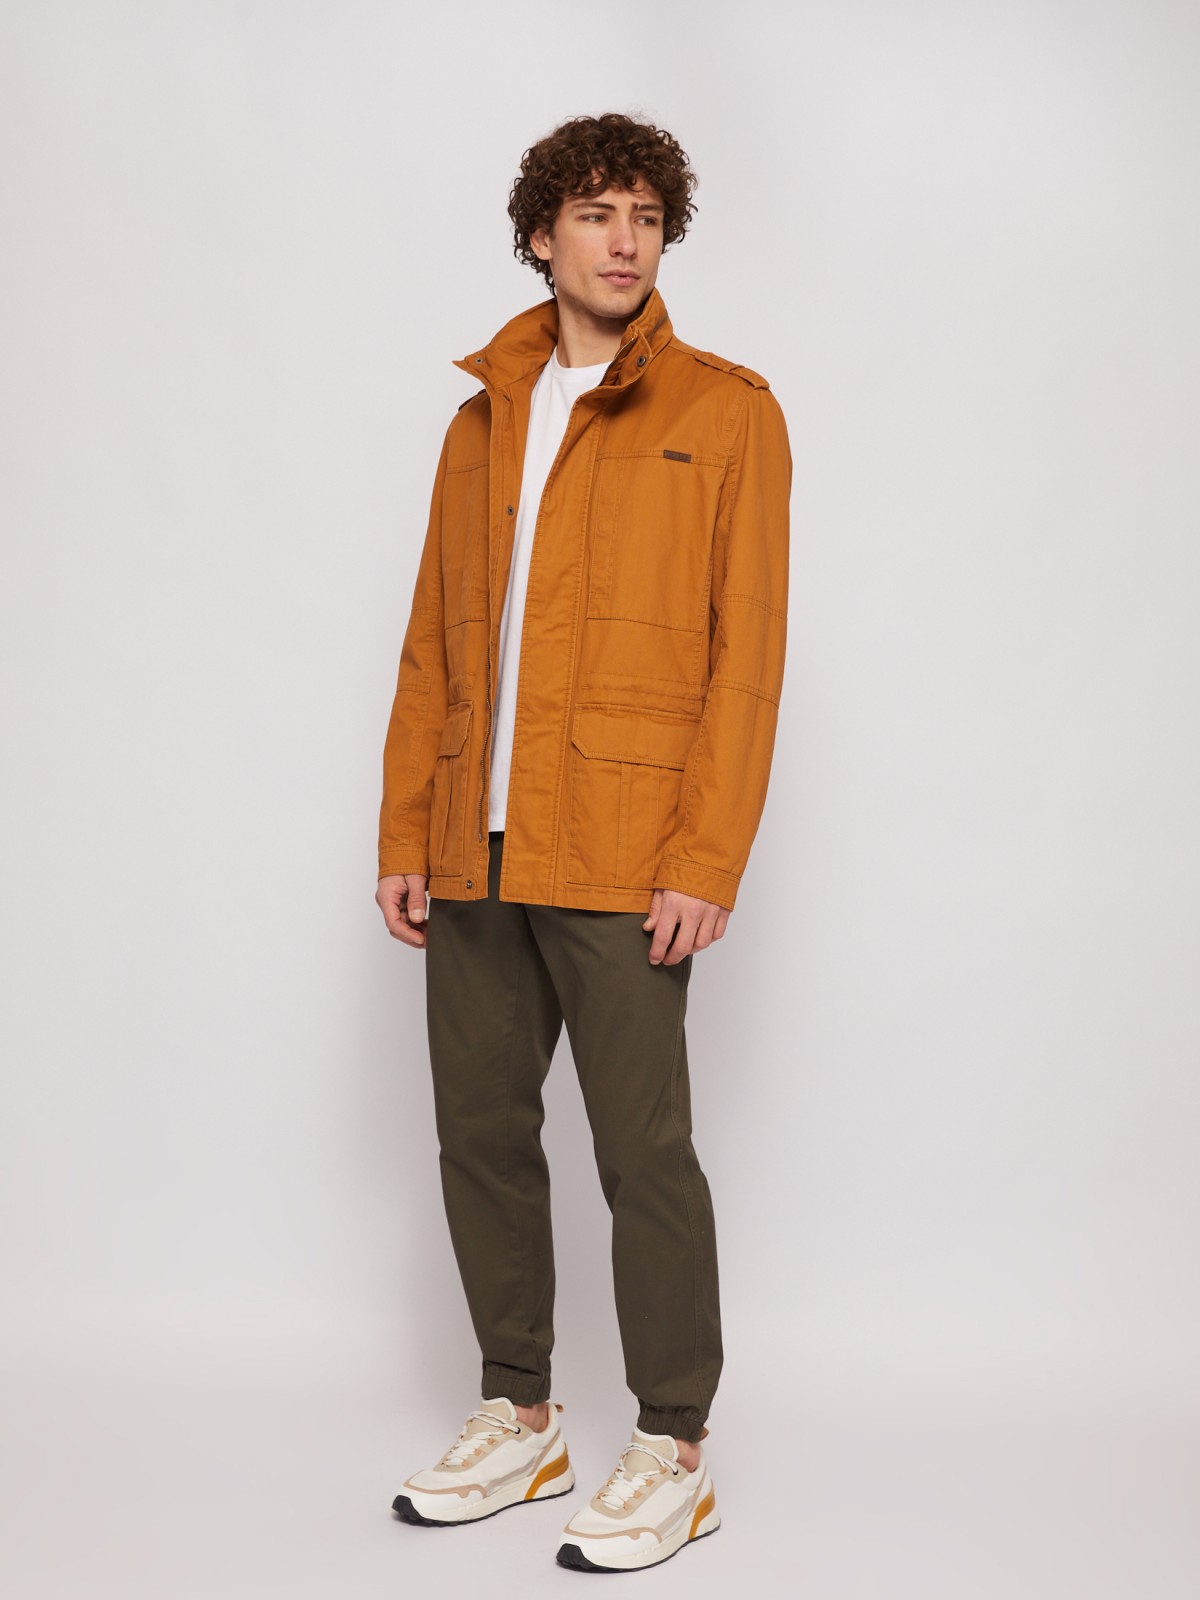 Куртка-ветровка из хлопка с воротником-стойкой zolla 014215602014, цвет горчичный, размер L - фото 2